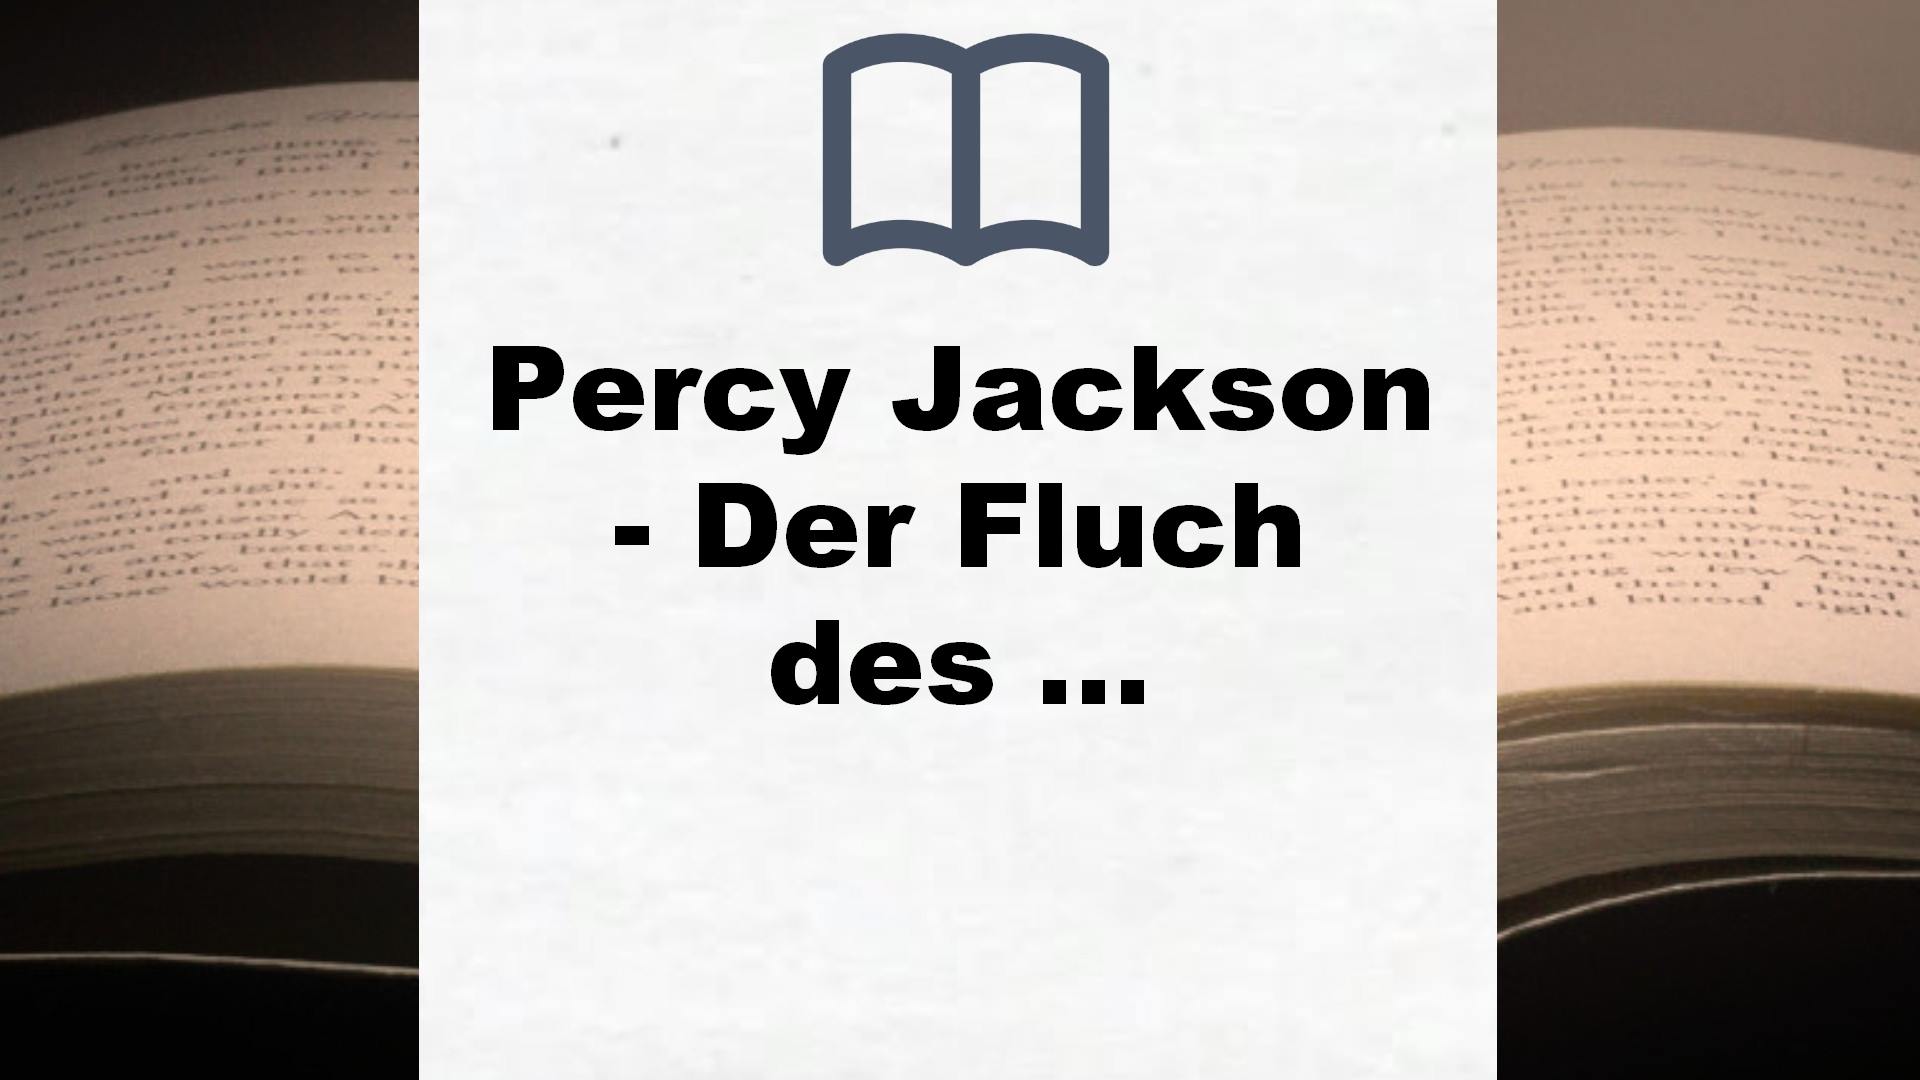 Percy Jackson – Der Fluch des Titanen (Percy Jackson 3): Der dritte Band der Bestsellerserie! – Buchrezension